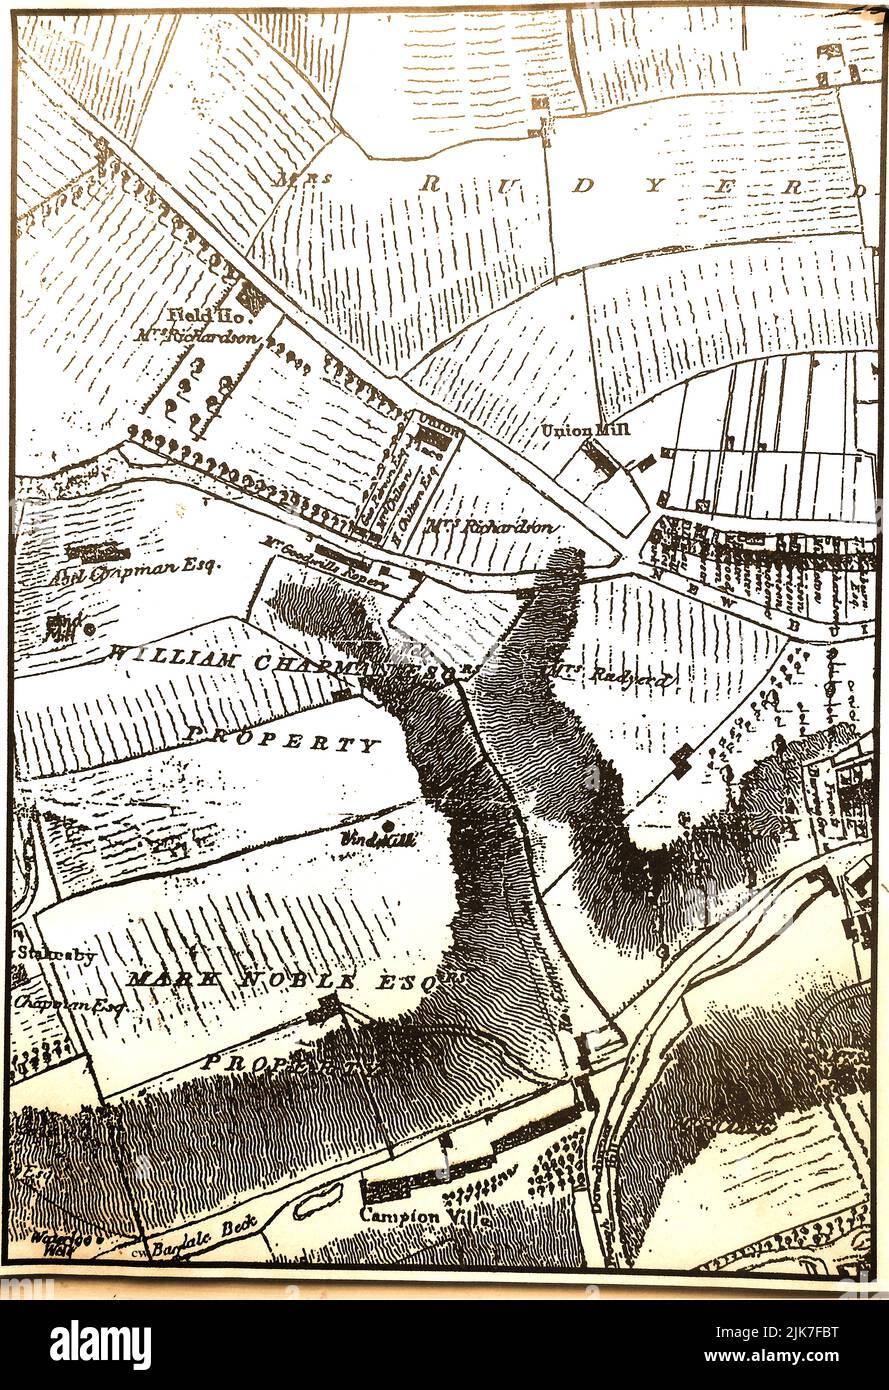 Eine alte Karte mit den Namen von Landbesitzern eines Teils der Stadt Whitby (North Yorkshire), die um Union Mill herum lag, vor dem Bau von Chubb Hill und Crescent Avenue Stockfoto